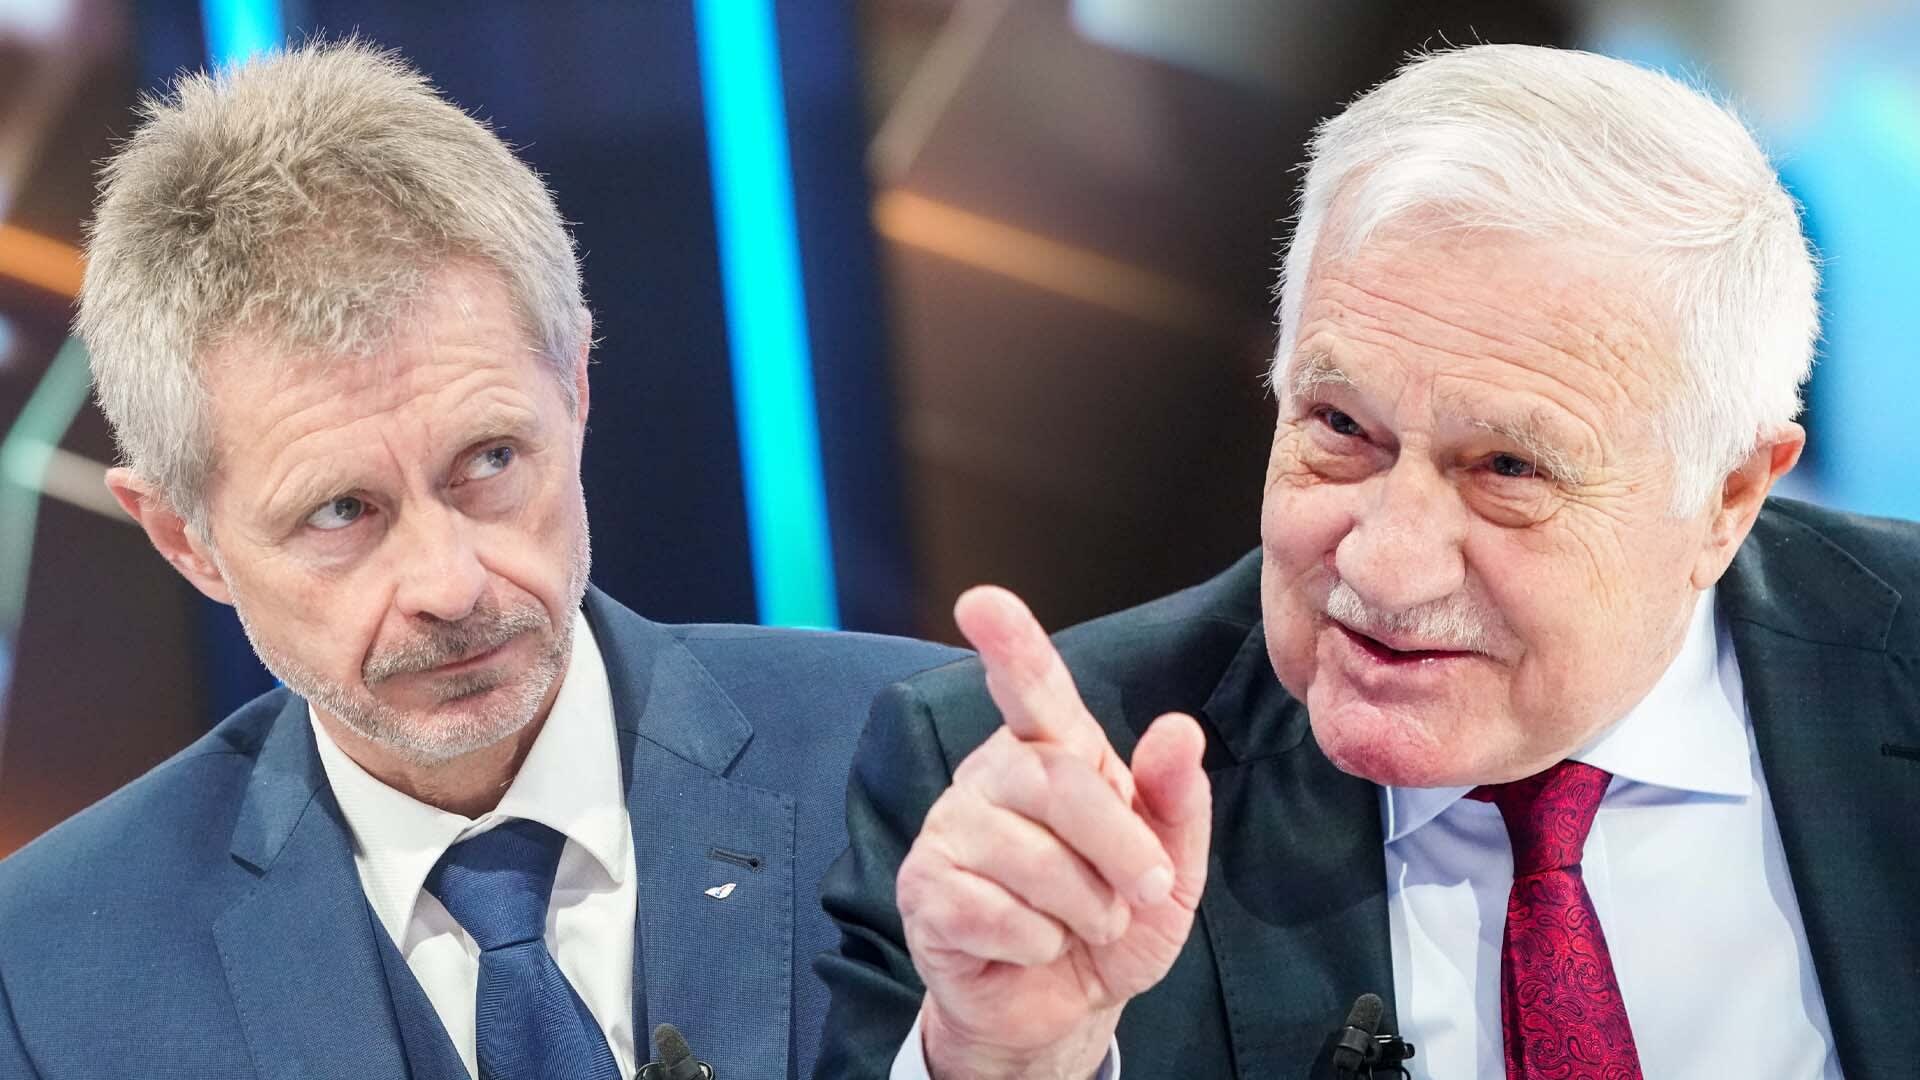 Bývalý prezident Václav Klaus prohlásil, že by „pání Vystrčilové“ měli spáchat harakiri. Poukazoval tak na jednání Senátu v době, kdy byl zdravotní stav Miloše Zemana nejasný.